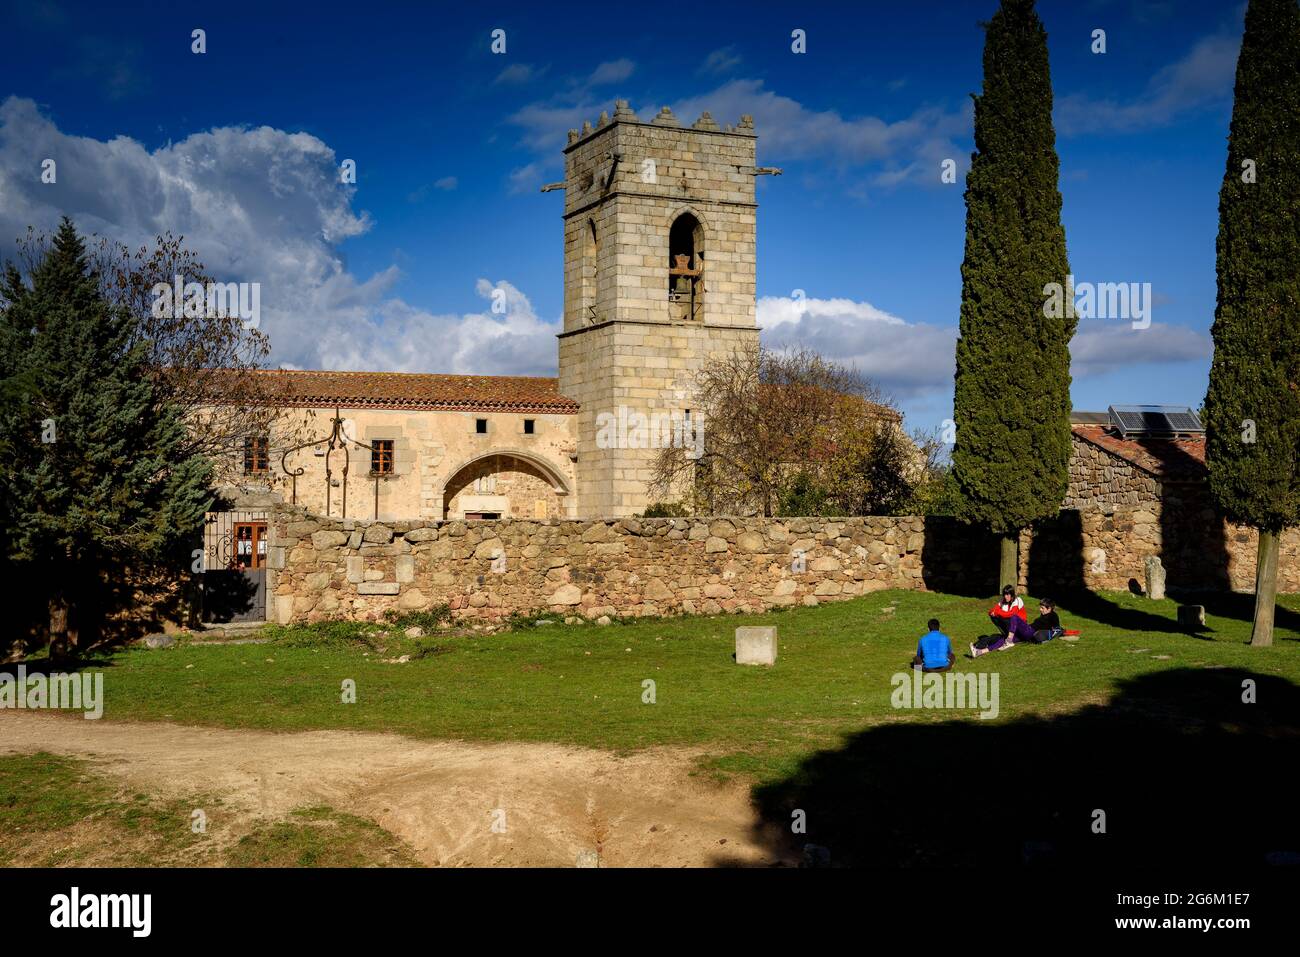 Il santuario di Corredor, in cima al massiccio del Corredor in inverno a mezzogiorno (Maresme, Barcellona, Catalogna, Spagna) ESP: El santuario del Corredor Foto Stock